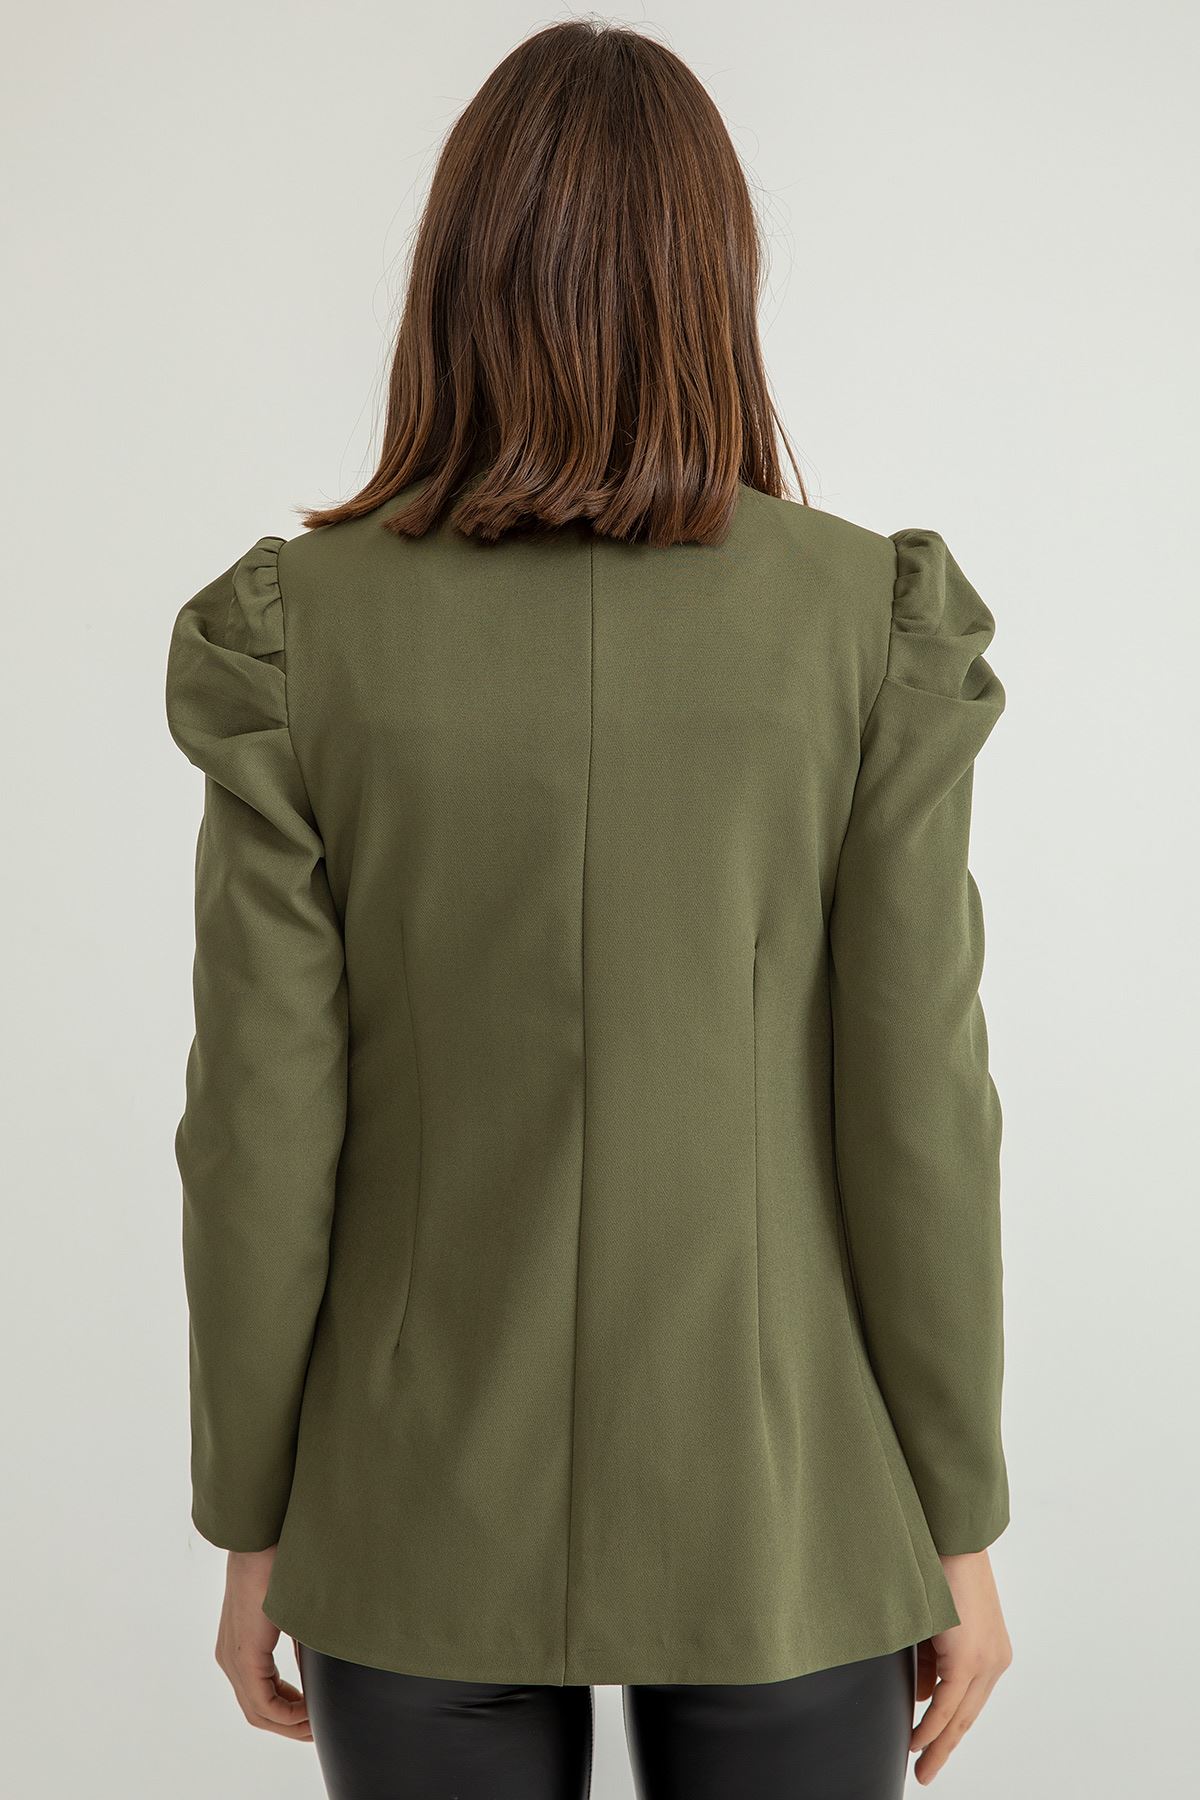 Atlas Fabric Long Sleeve Shawl Collar Below Hip Classical Ruffled Women Jacket - Khaki 